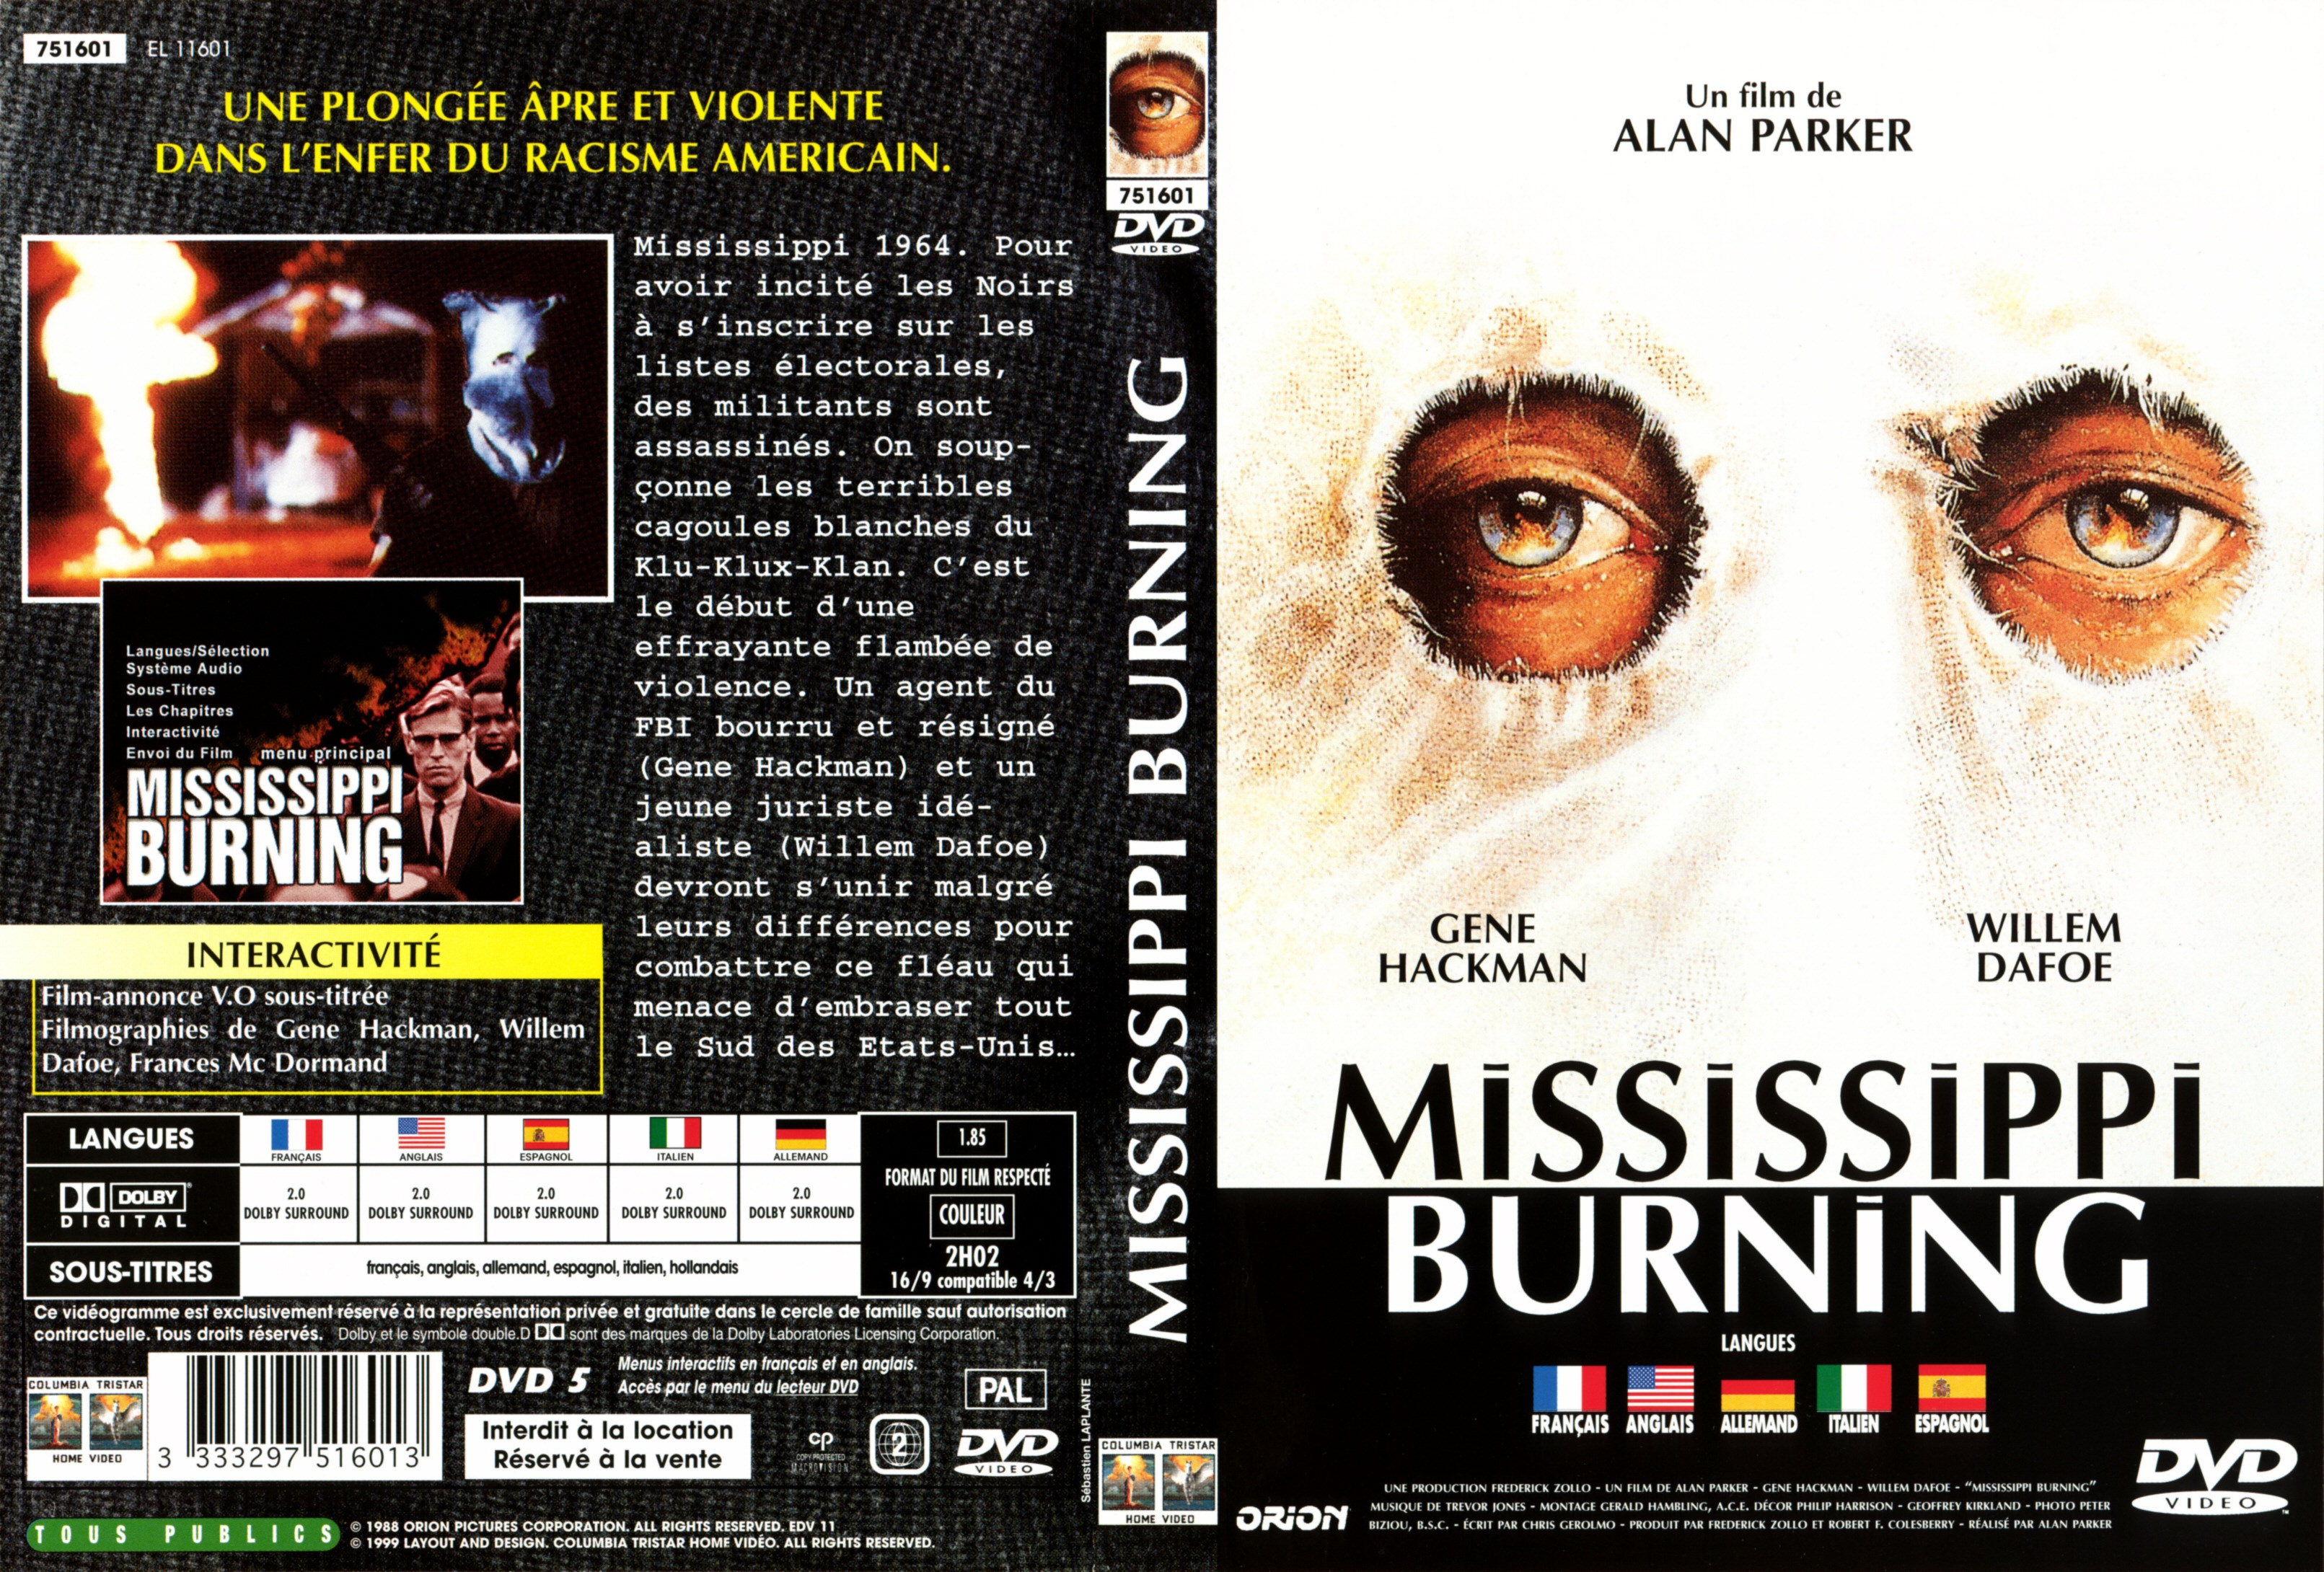 Jaquette DVD Mississippi burning v2